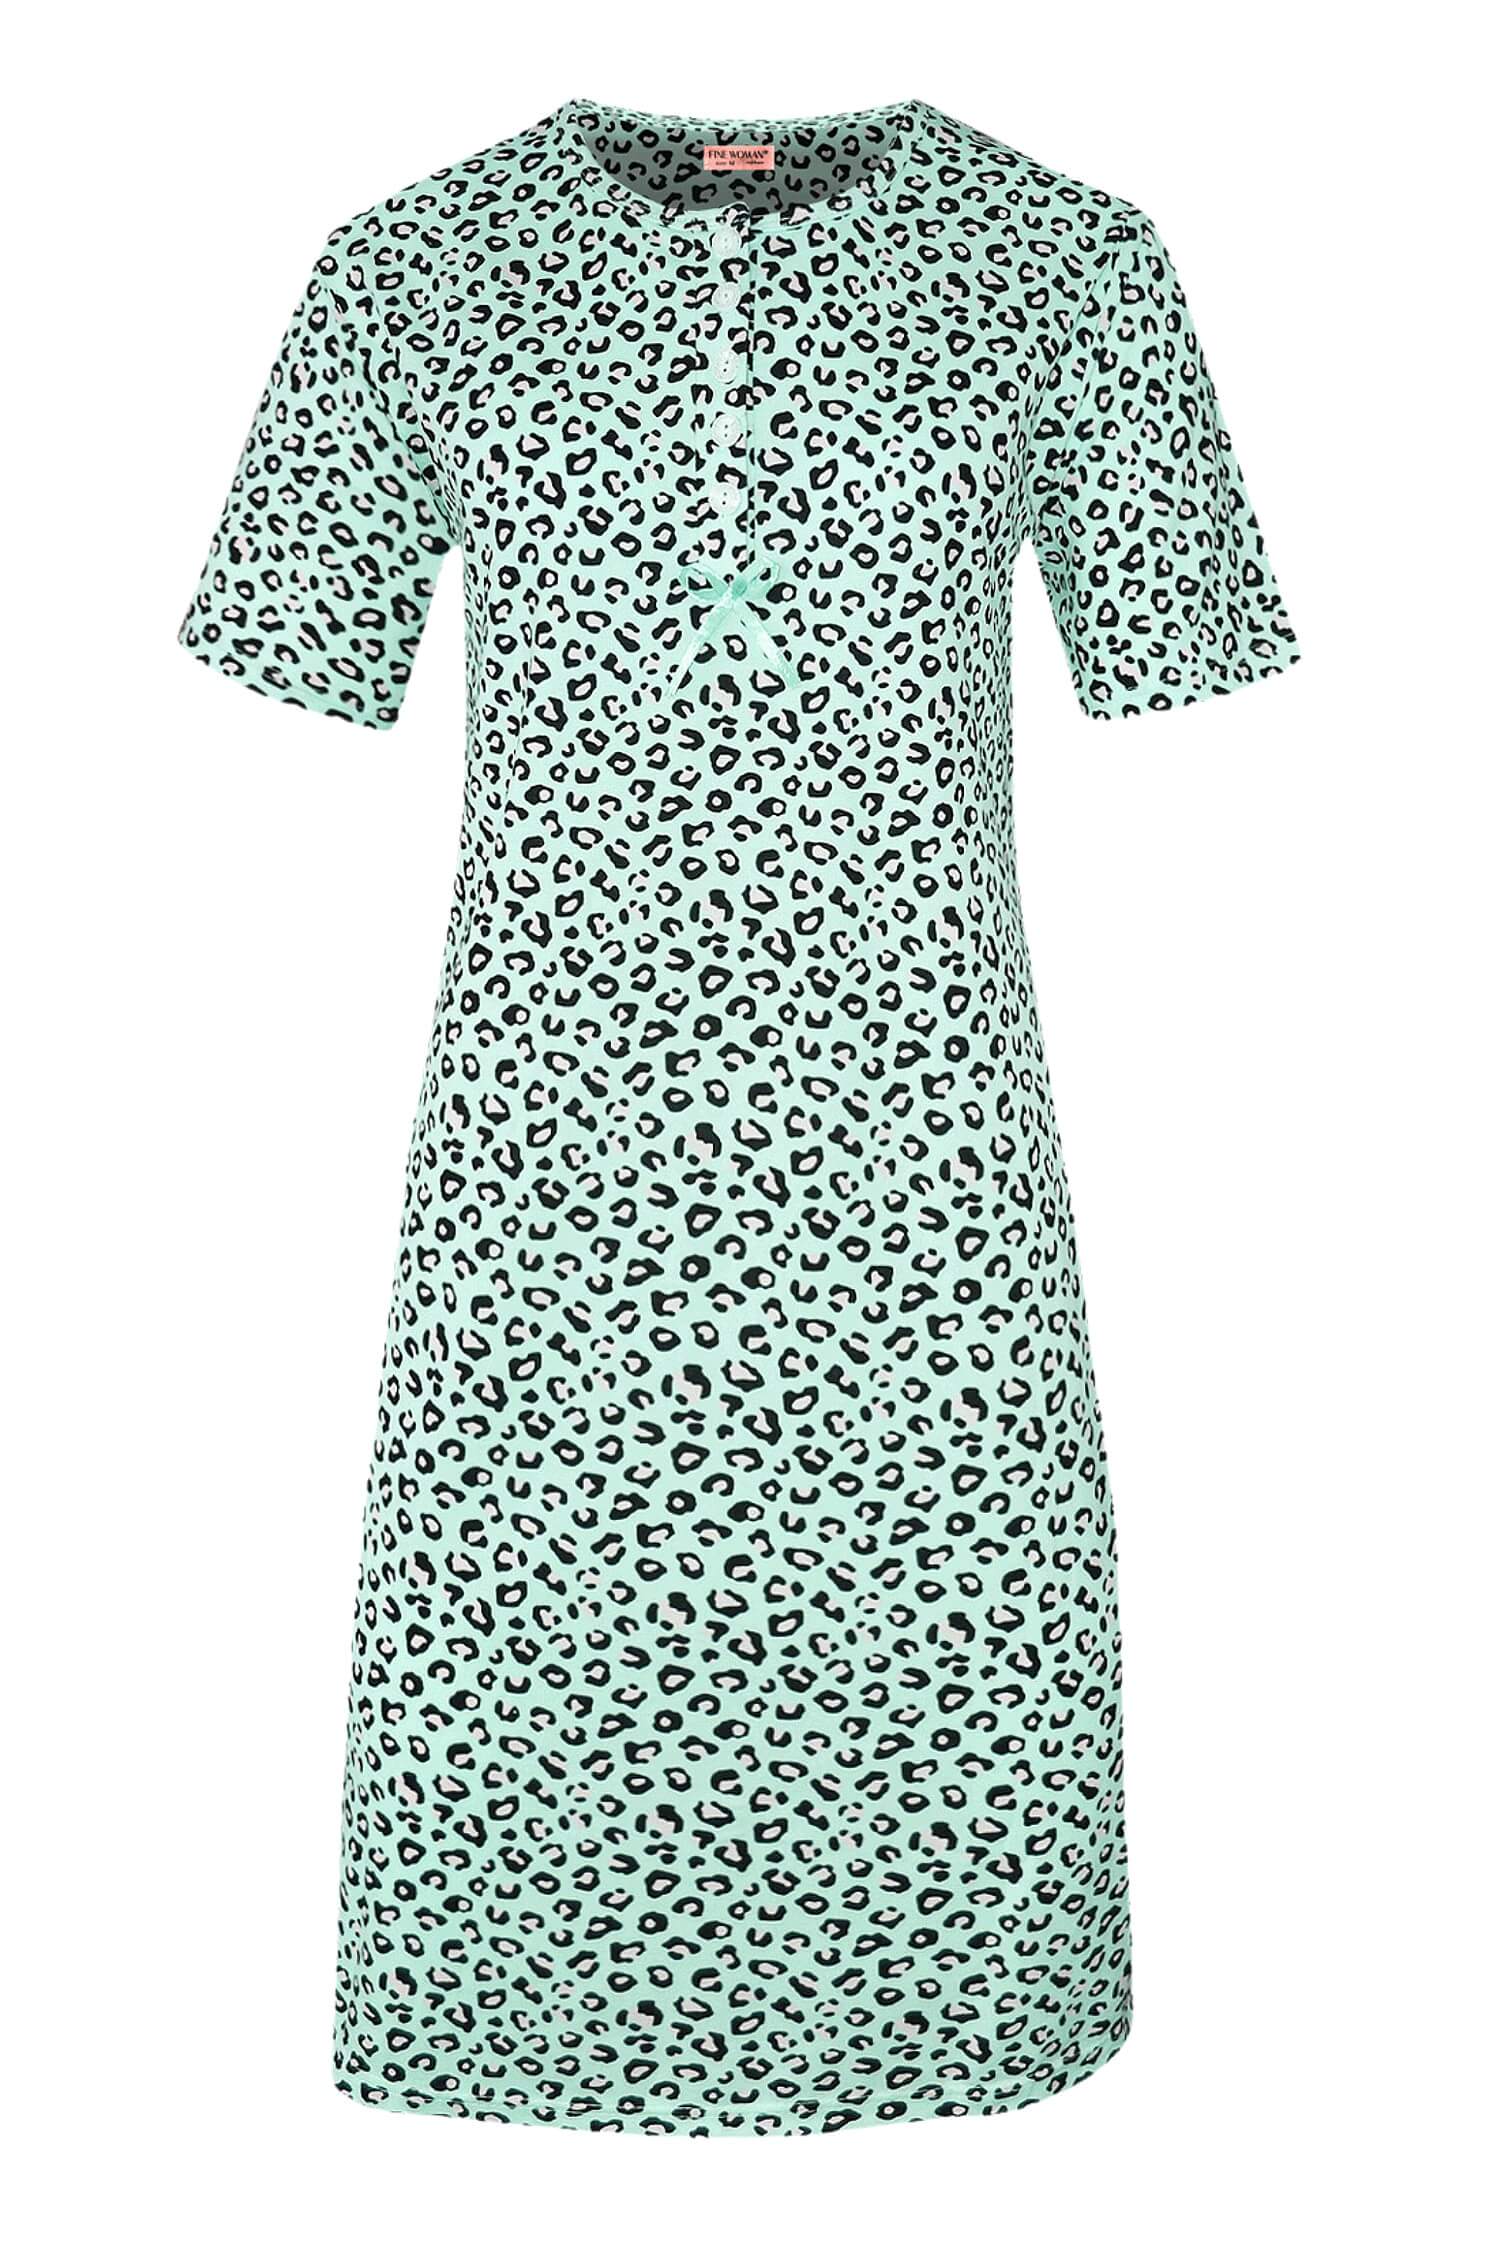 Katarina dámská noční košile leopardí vzor 6529 XL světle zelená